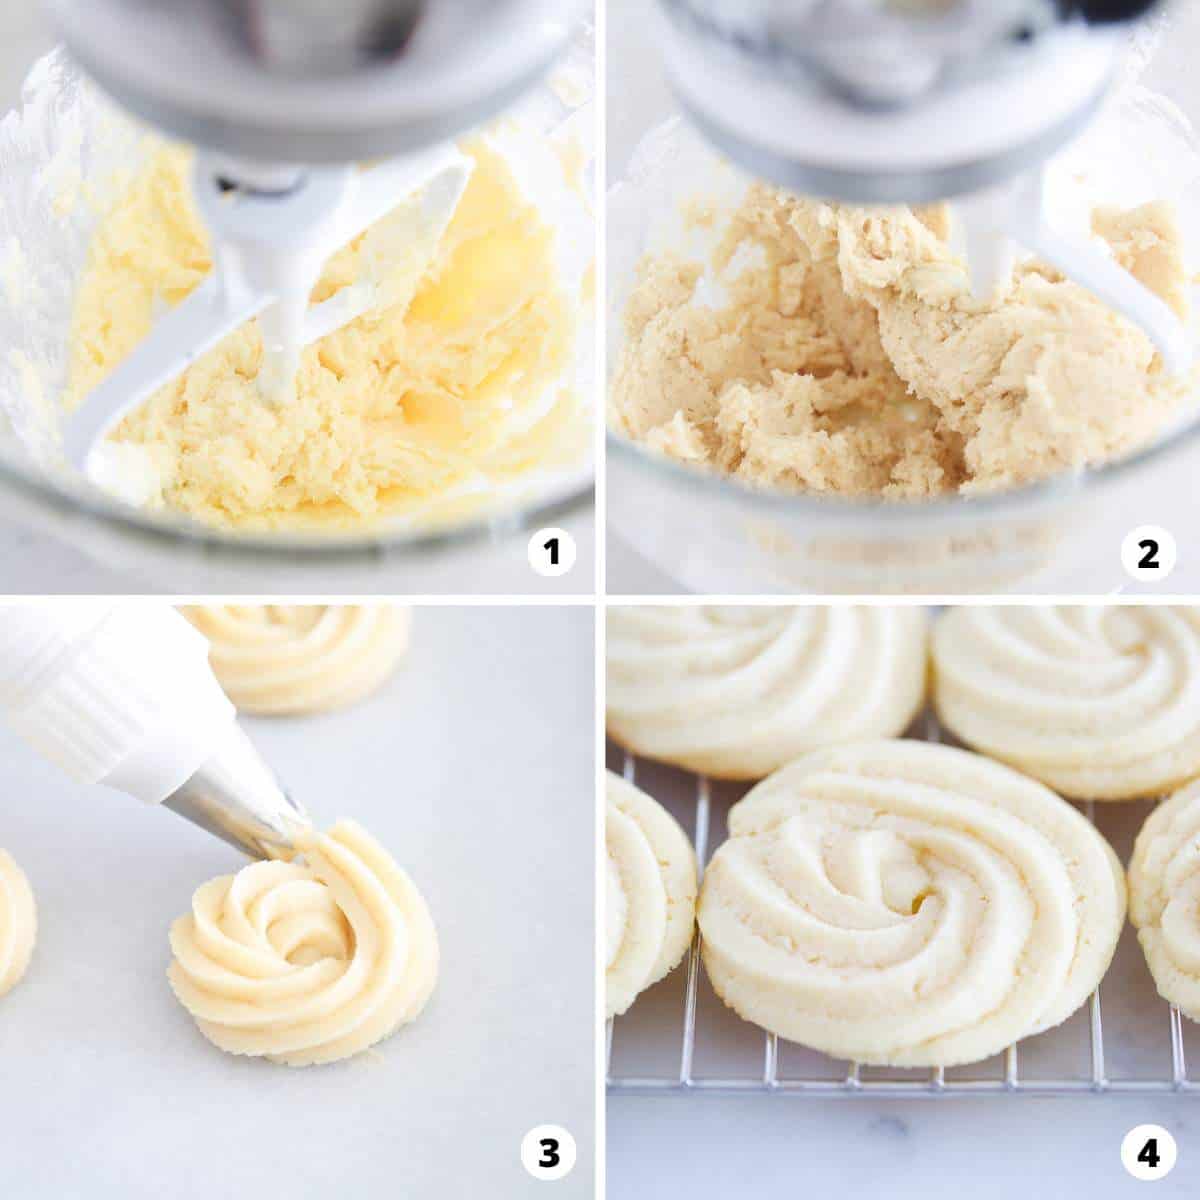 Tereyağlı kurabiye yapmayı 4 adımlık bir kolajda gösteriyoruz.